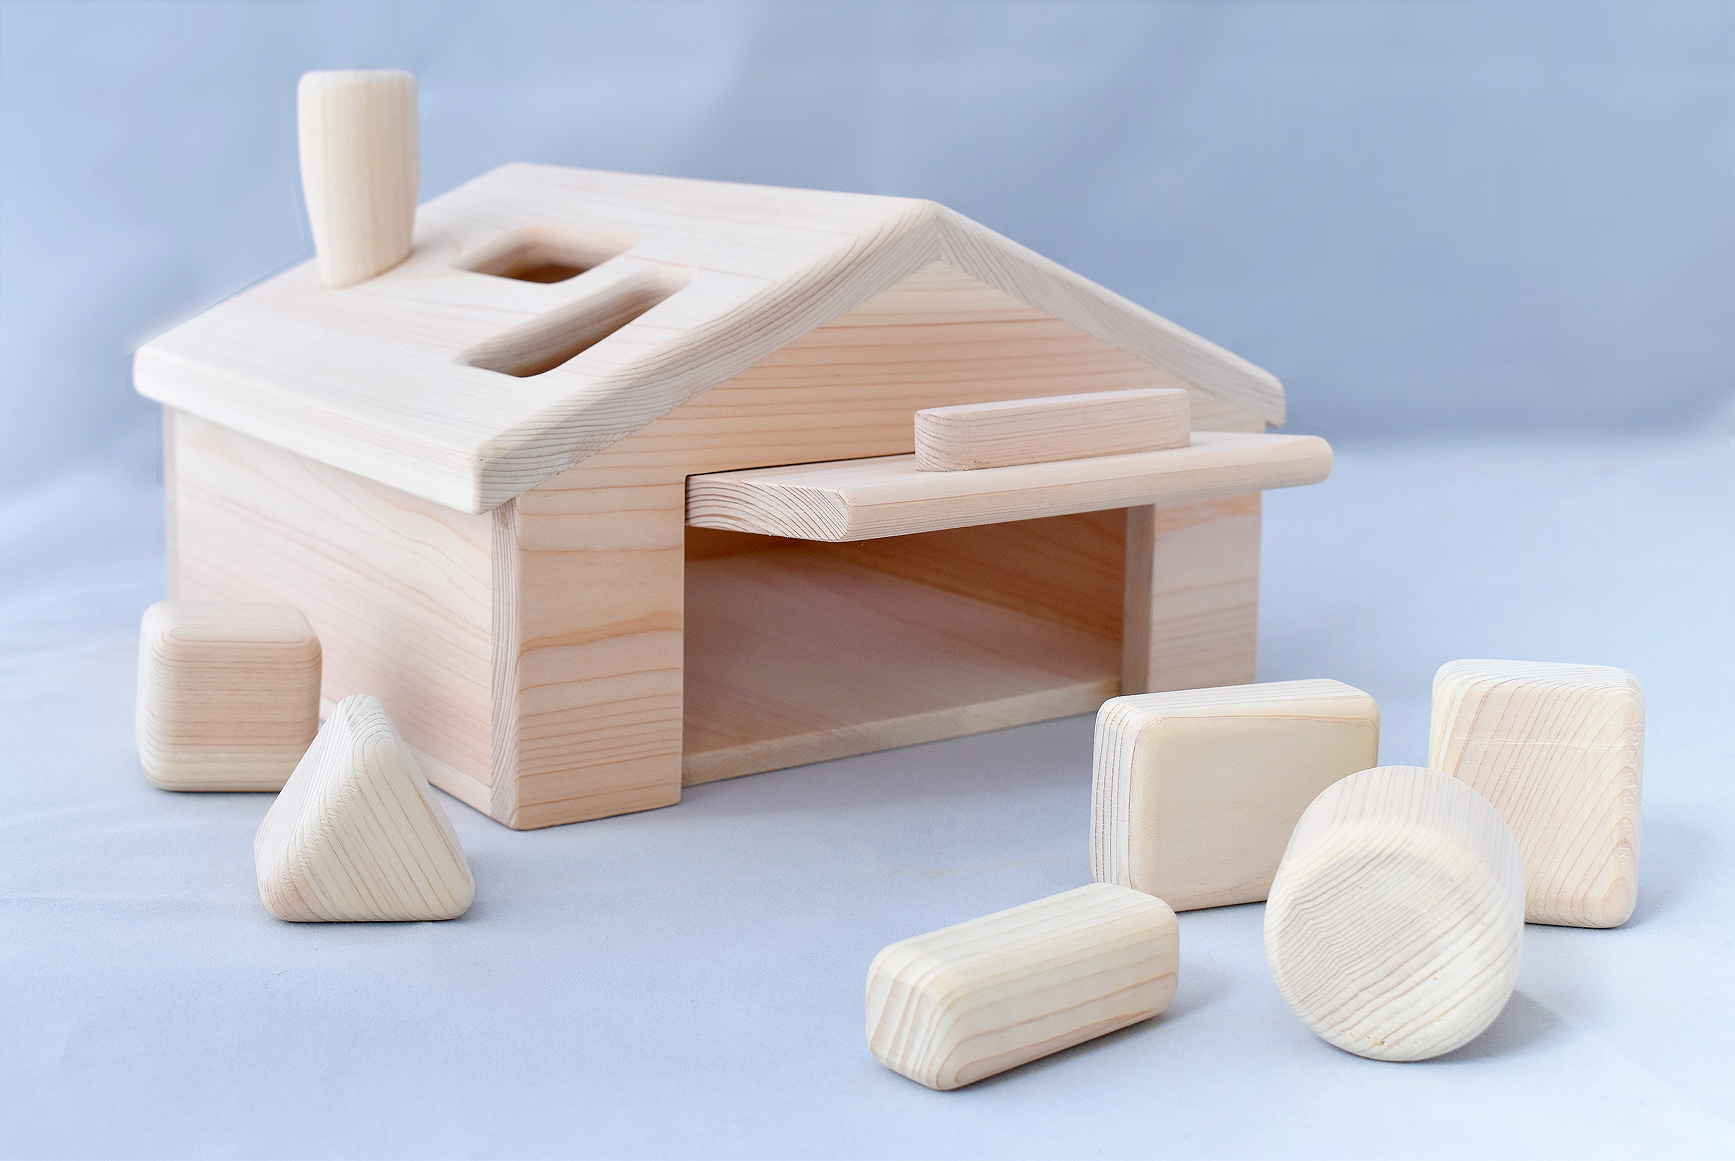 吉野町ファーストトイプレゼント『型はめブロック材木屋さん』デザイン・製作しました。